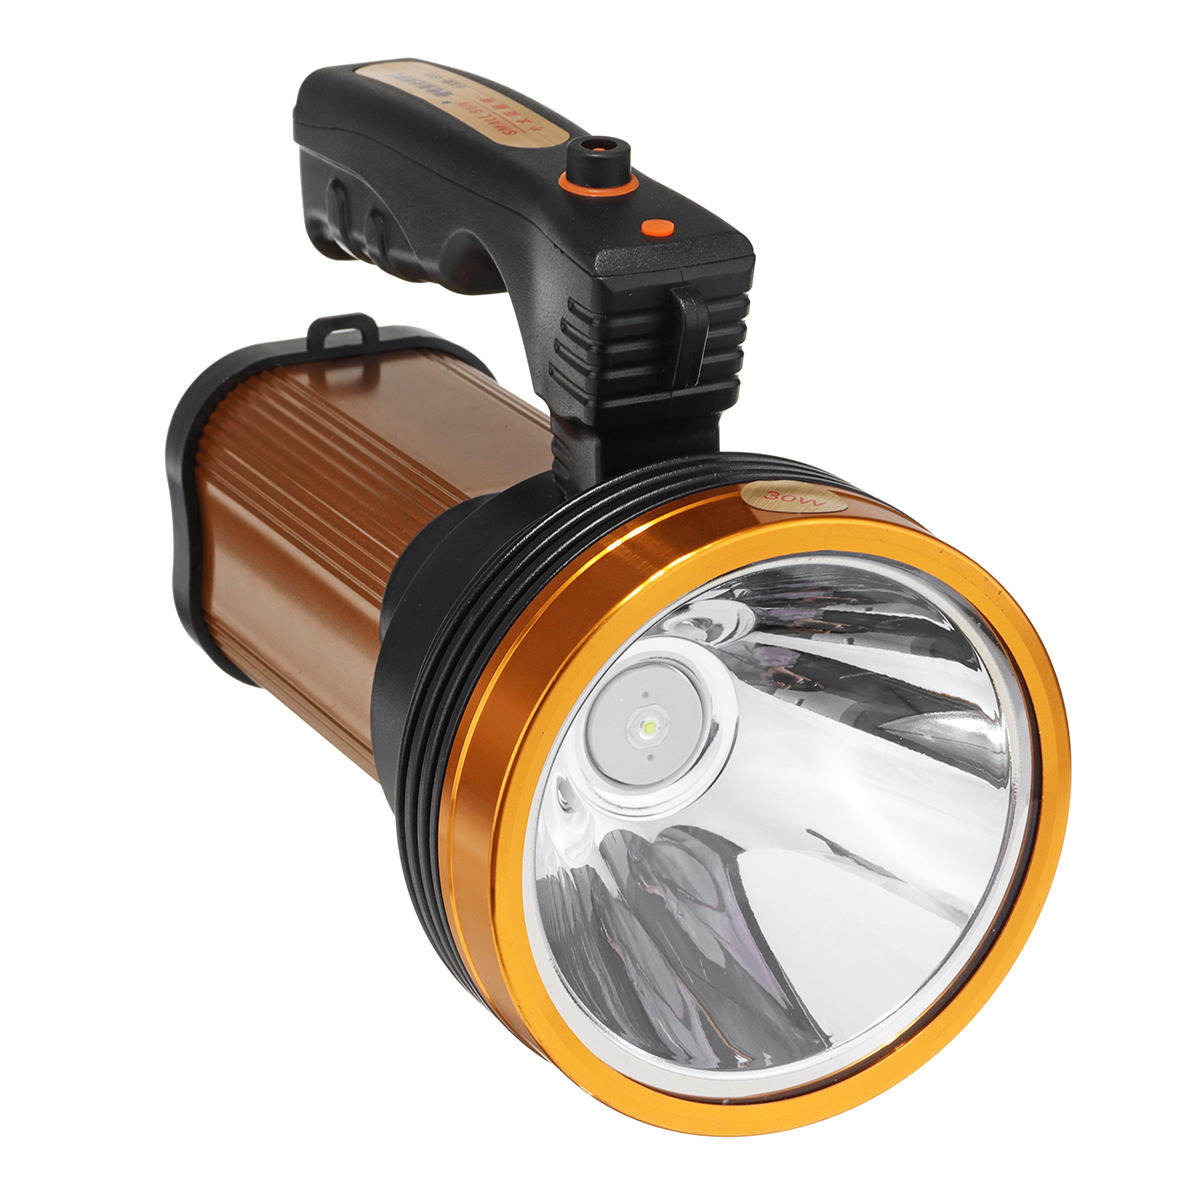 30W Super Bright LED Suchscheinwerfer Scheinwerfer USB Taschenlampe Lampe Laterne Outdoor Camping